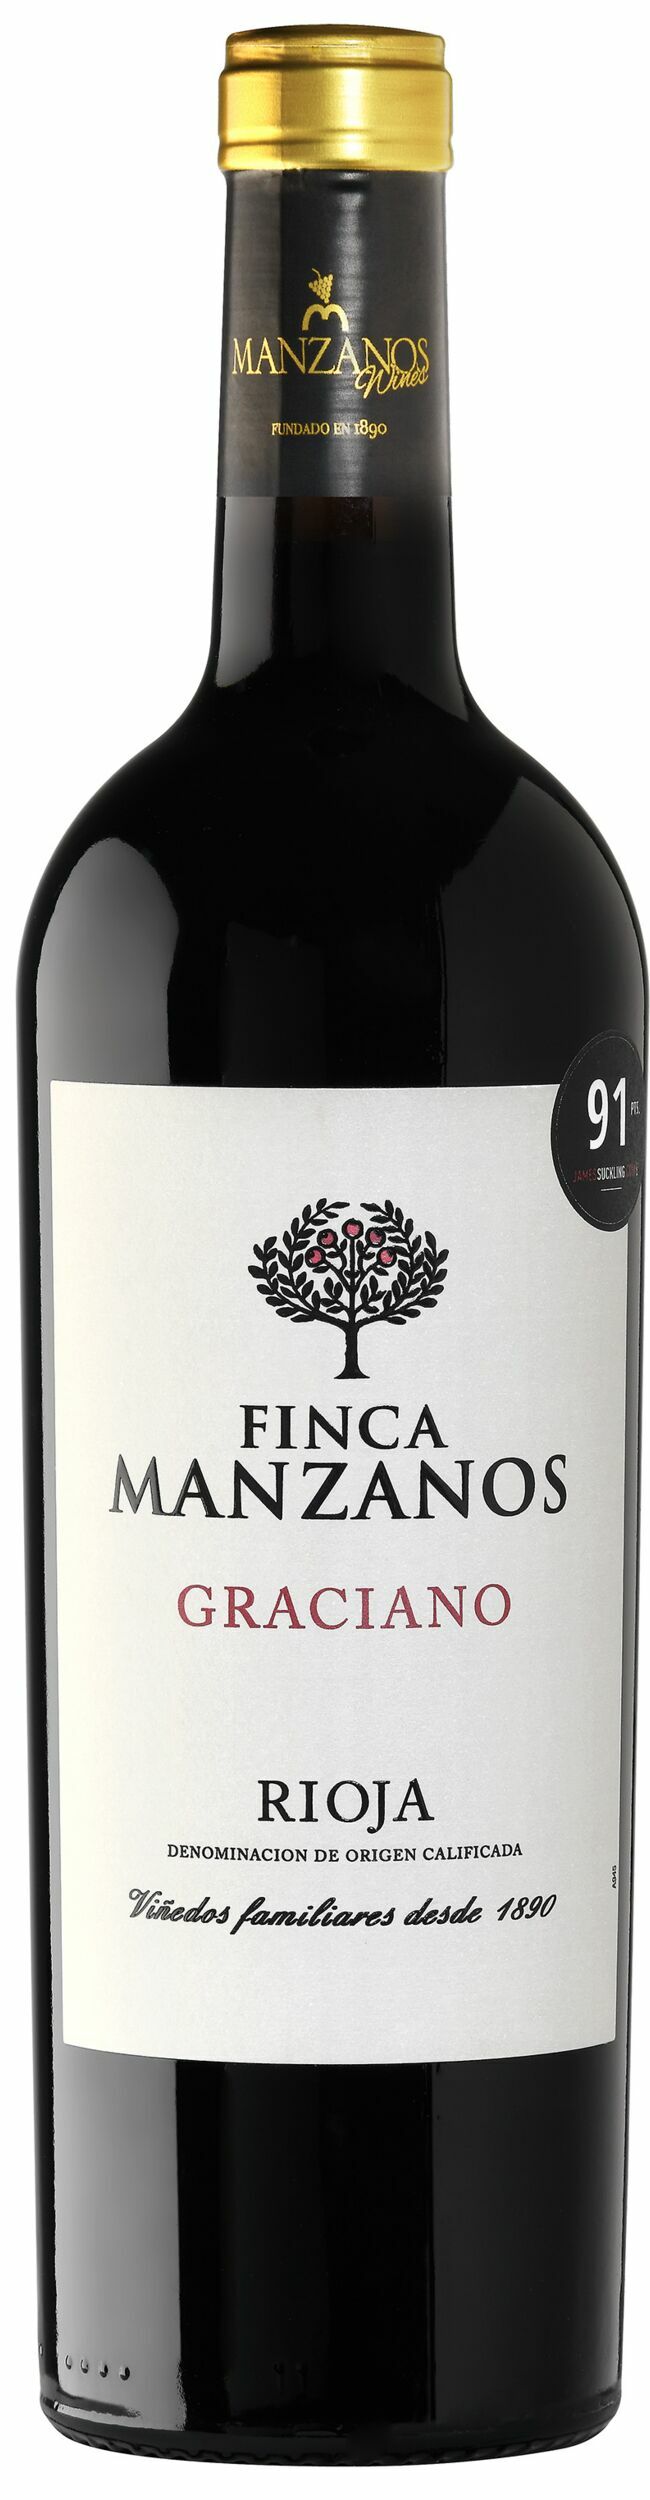 Rioja AOP 2018, Finca Manzanos, Graciano, 6,46 €, chez Système U.